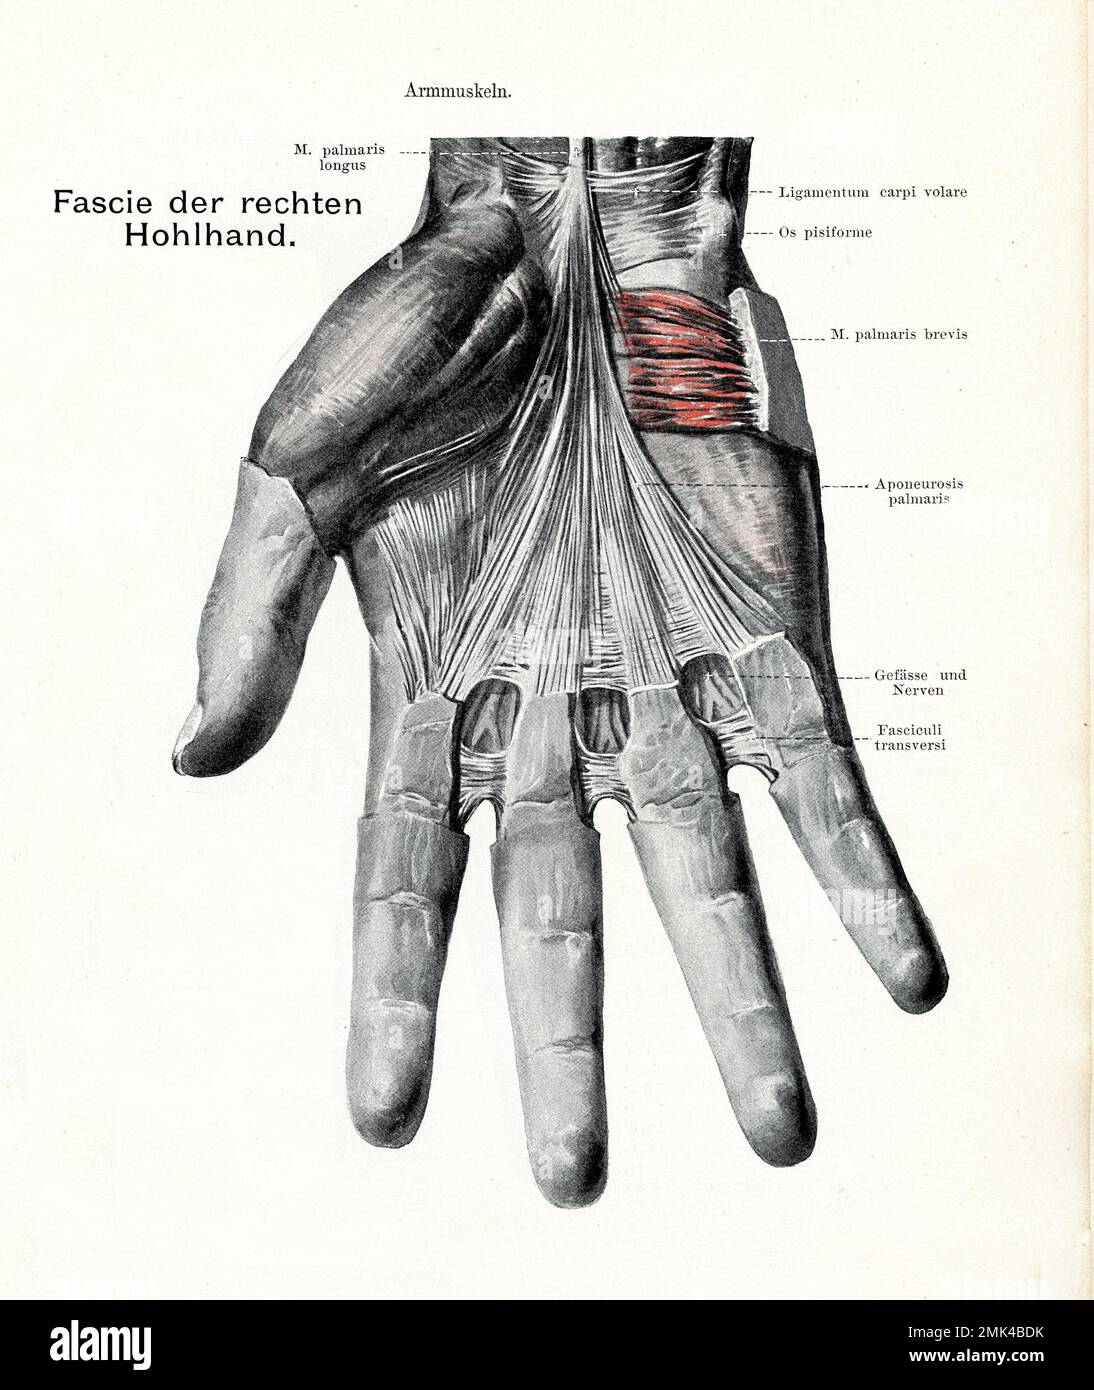 Illustration ancienne de l'anatomie des muscles Fascie et interossei, paume droite avec descriptions anatomiques allemandes Banque D'Images